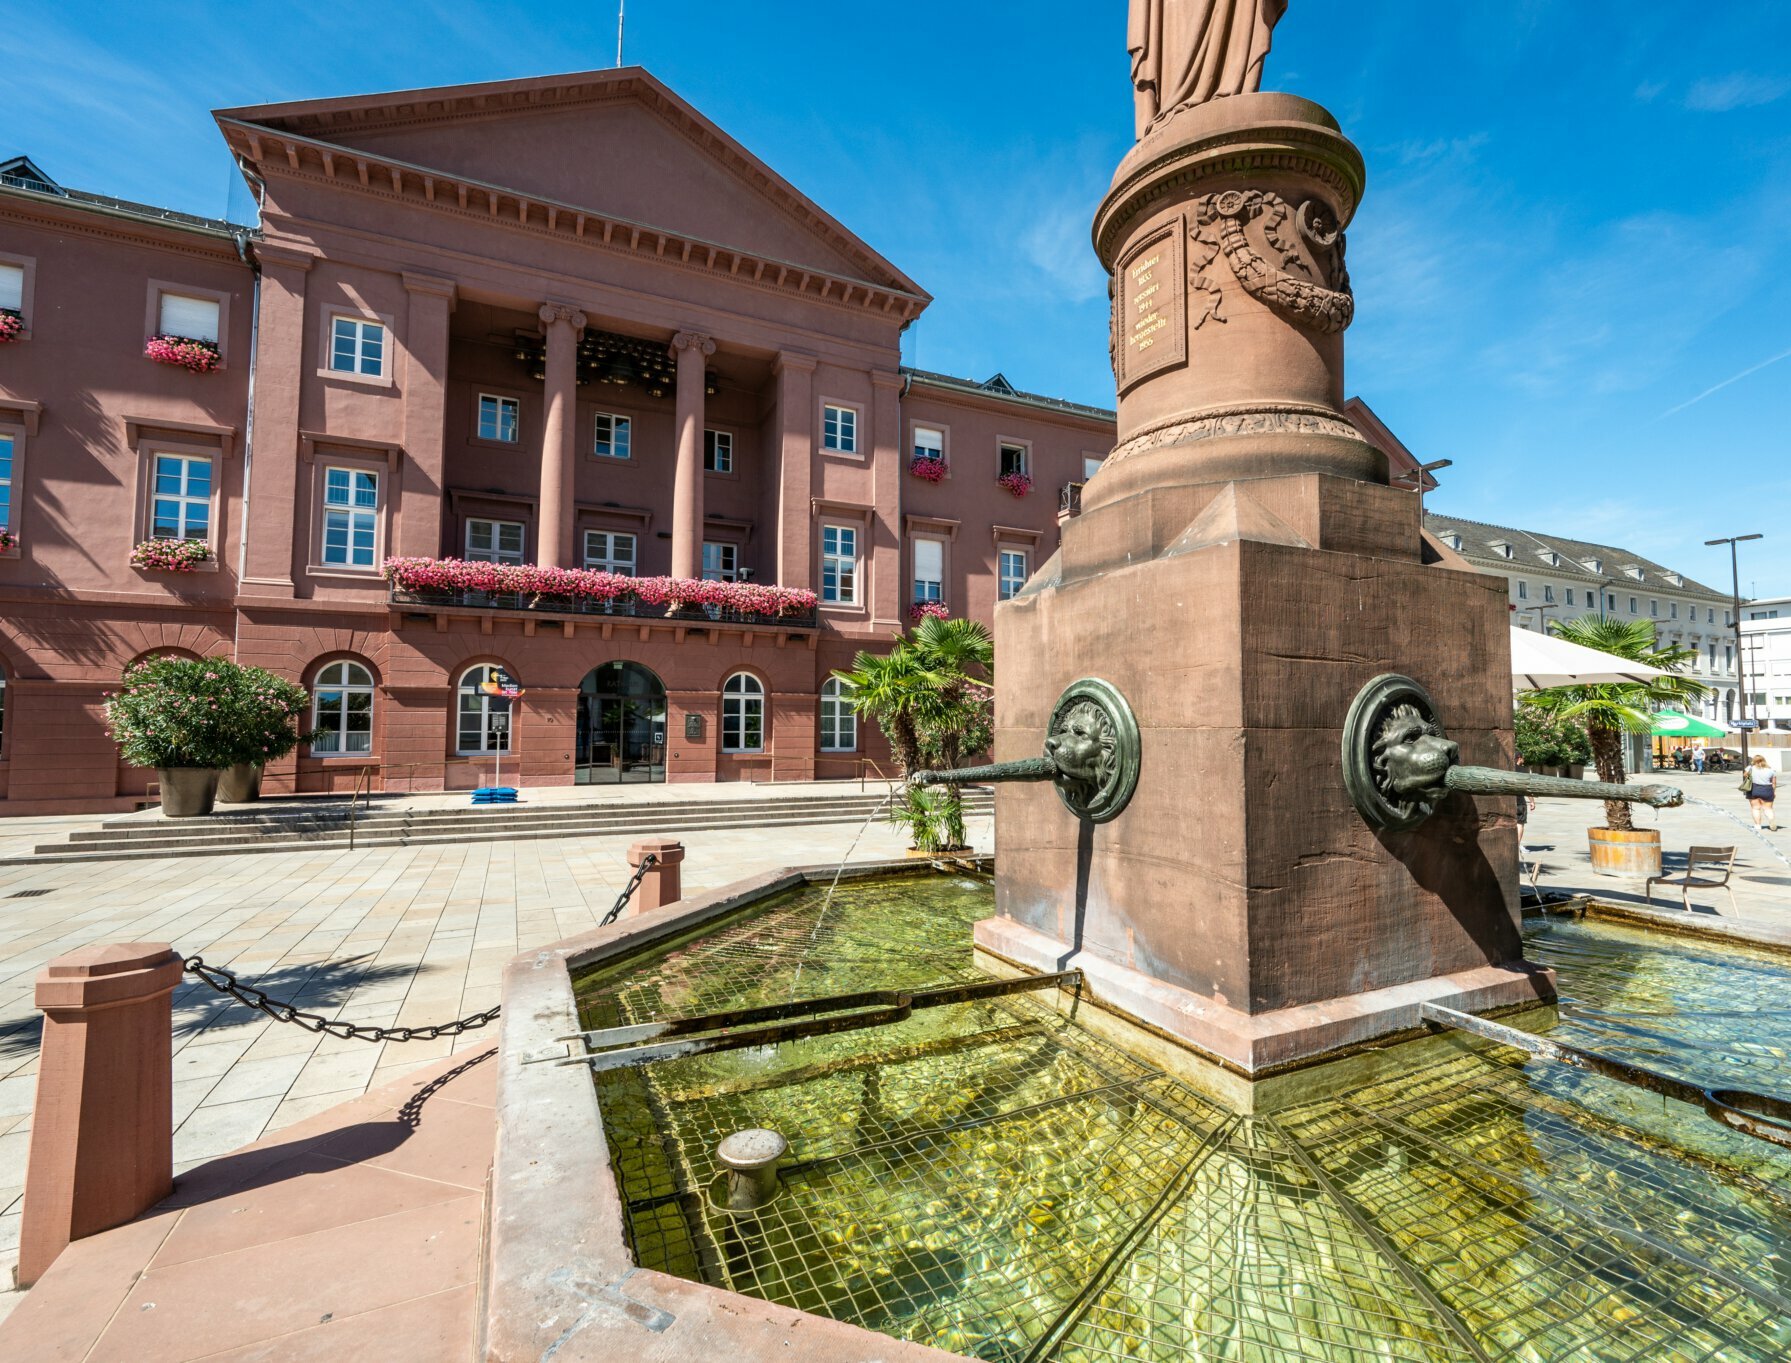 Außenansicht des Rathausgebäudes am Marktplatz mit Brunnen im Vordergrund